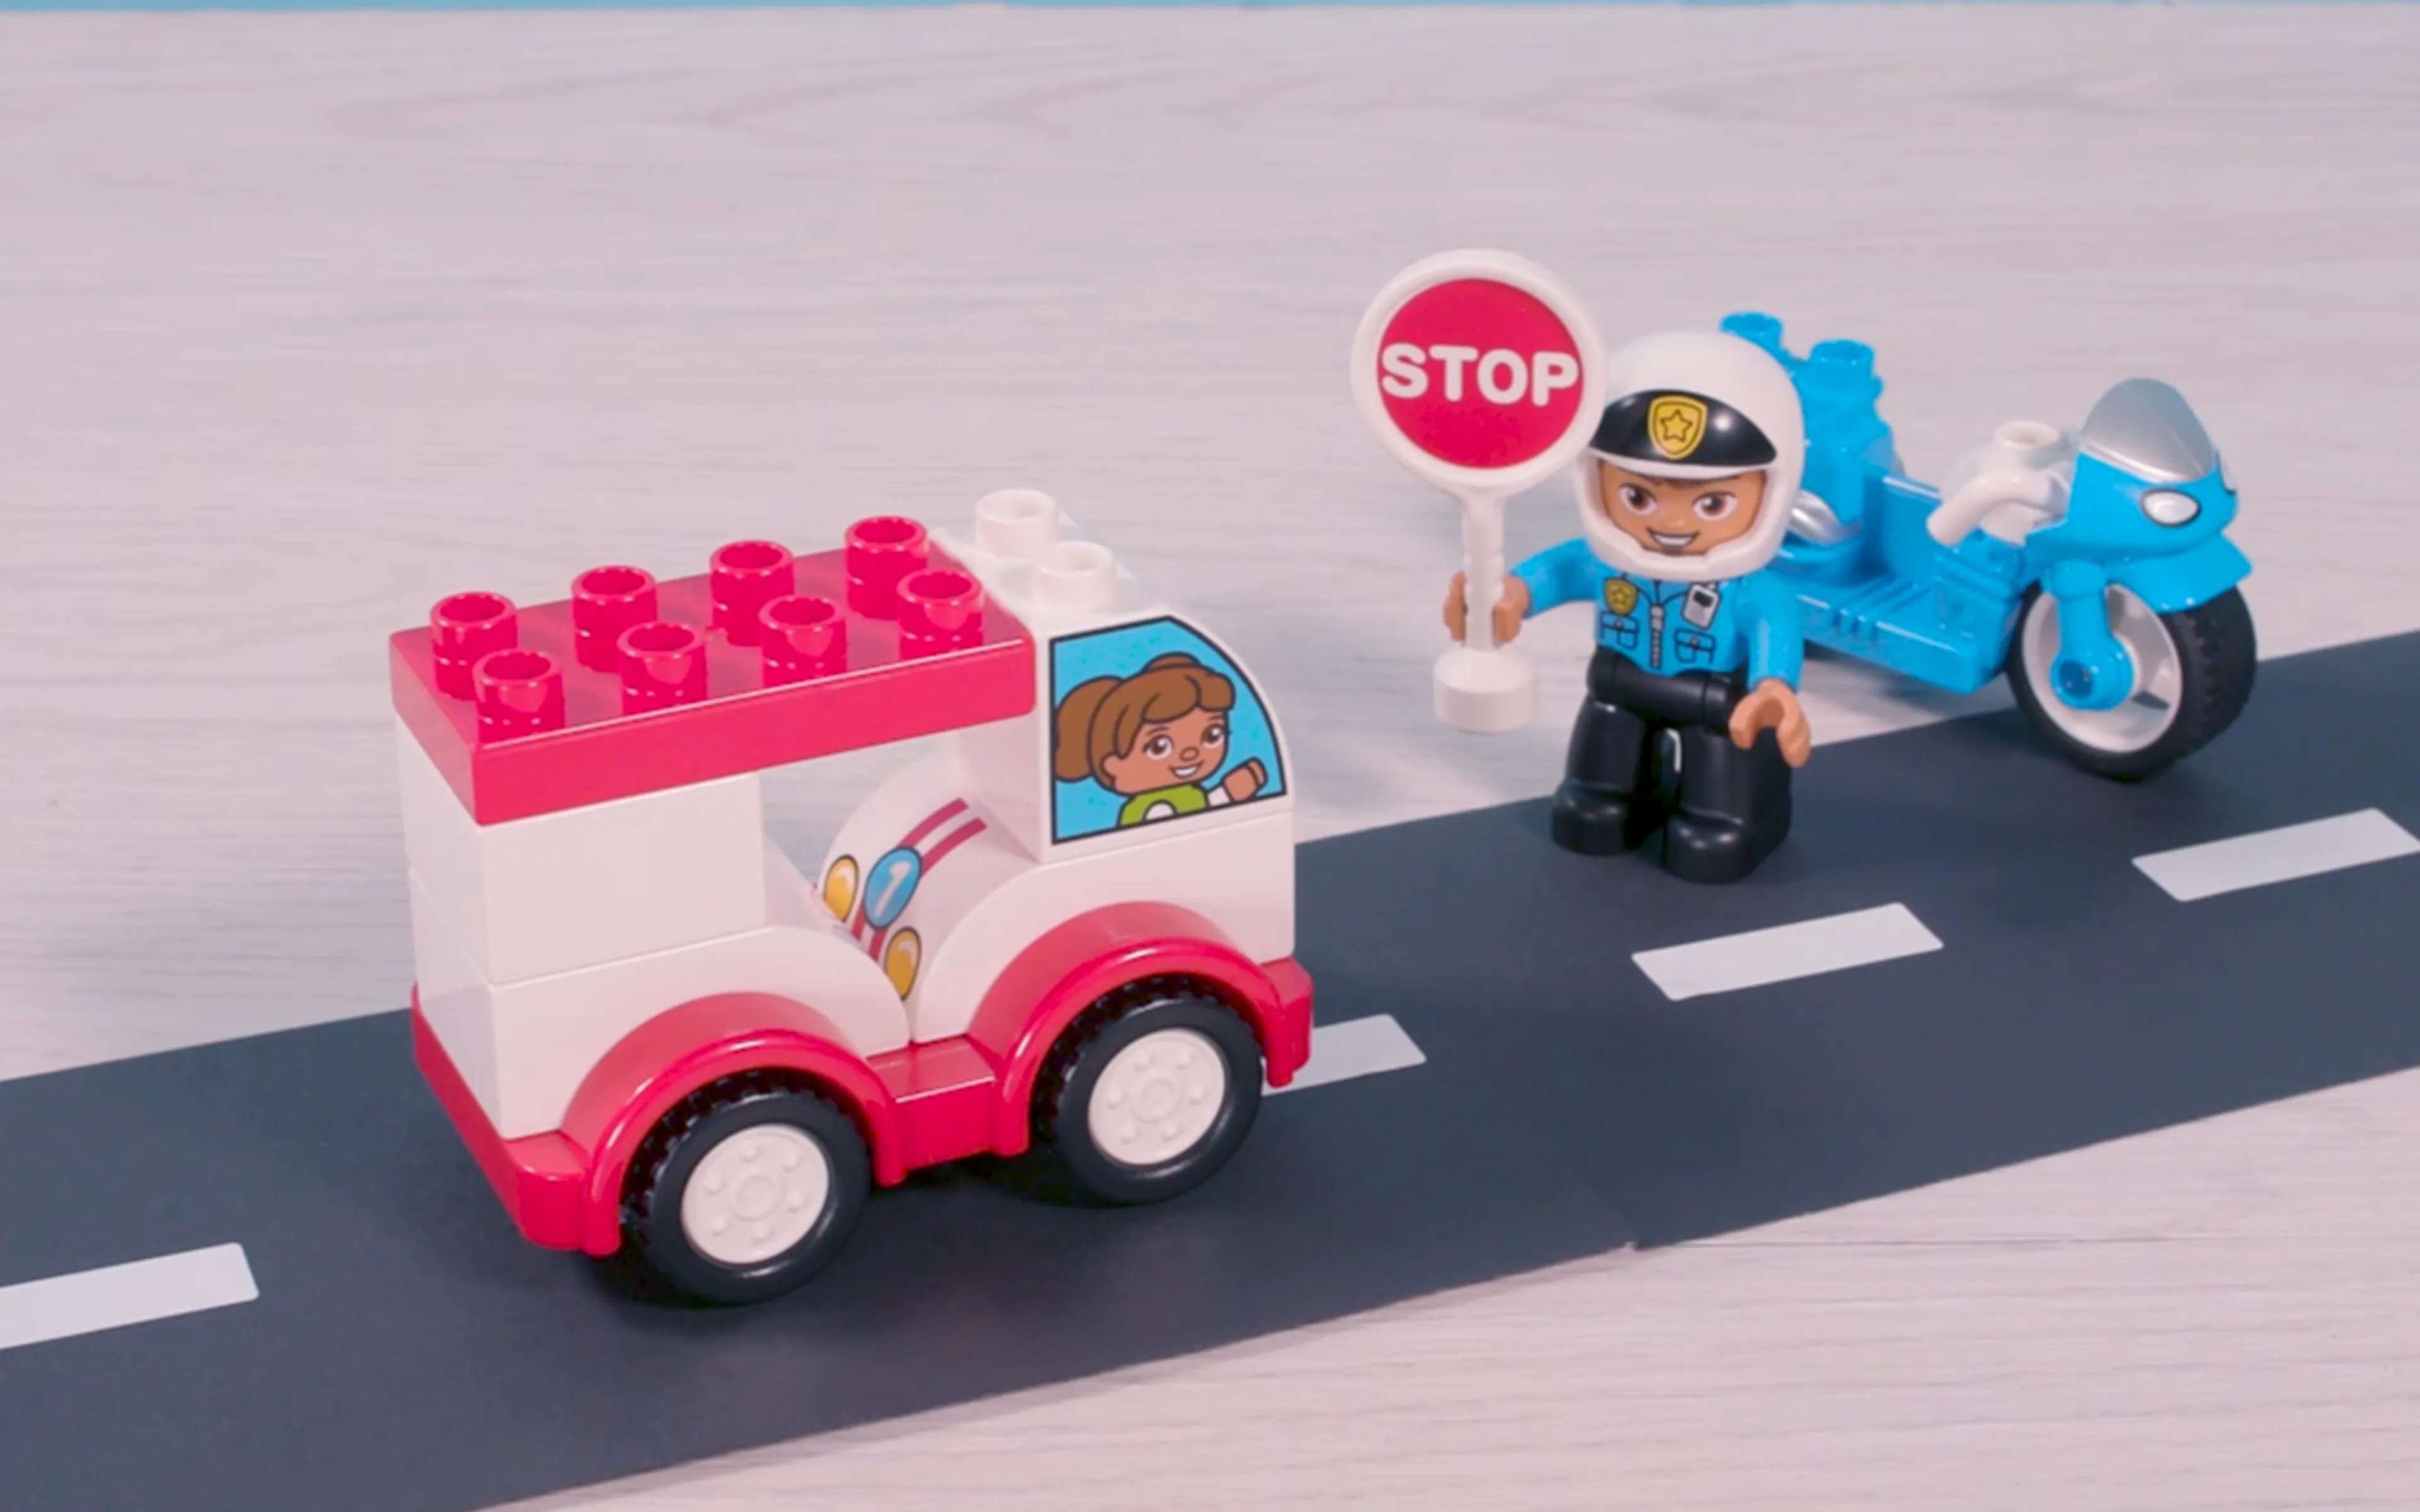 Een afbeelding van een LEGO DUPLO politieagent met een stopbord